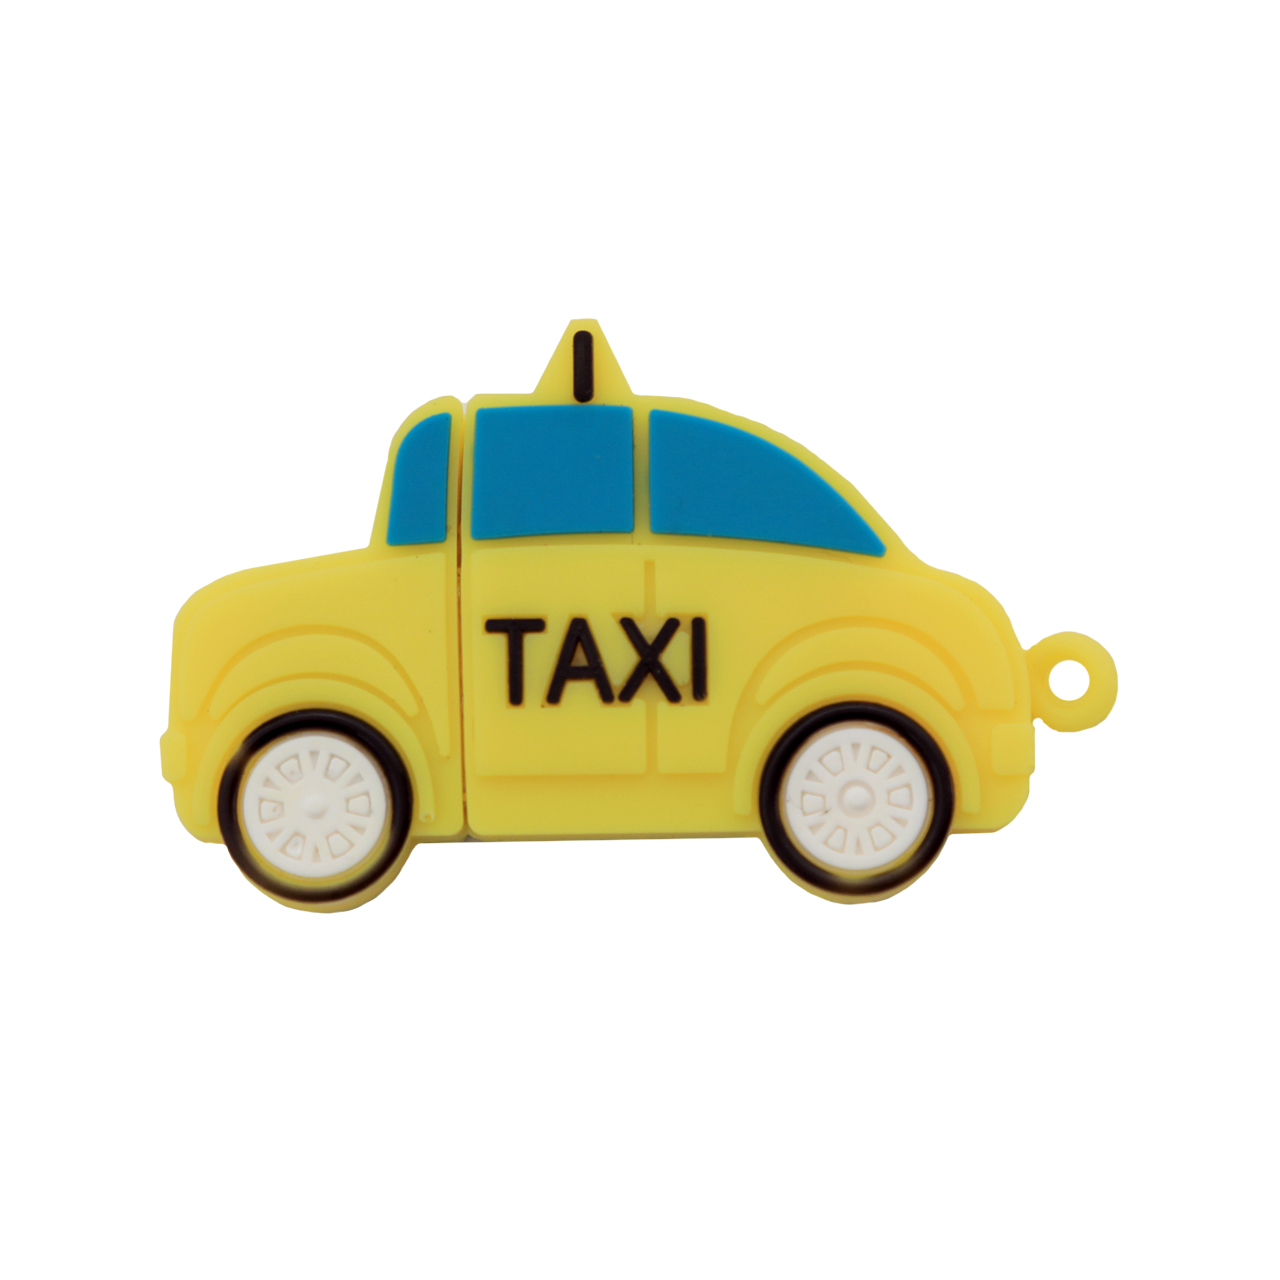 فلش مموری دایا دیتا طرح Taxi مدل PM1003-USB3 ظرفیت 64 گیگابایت